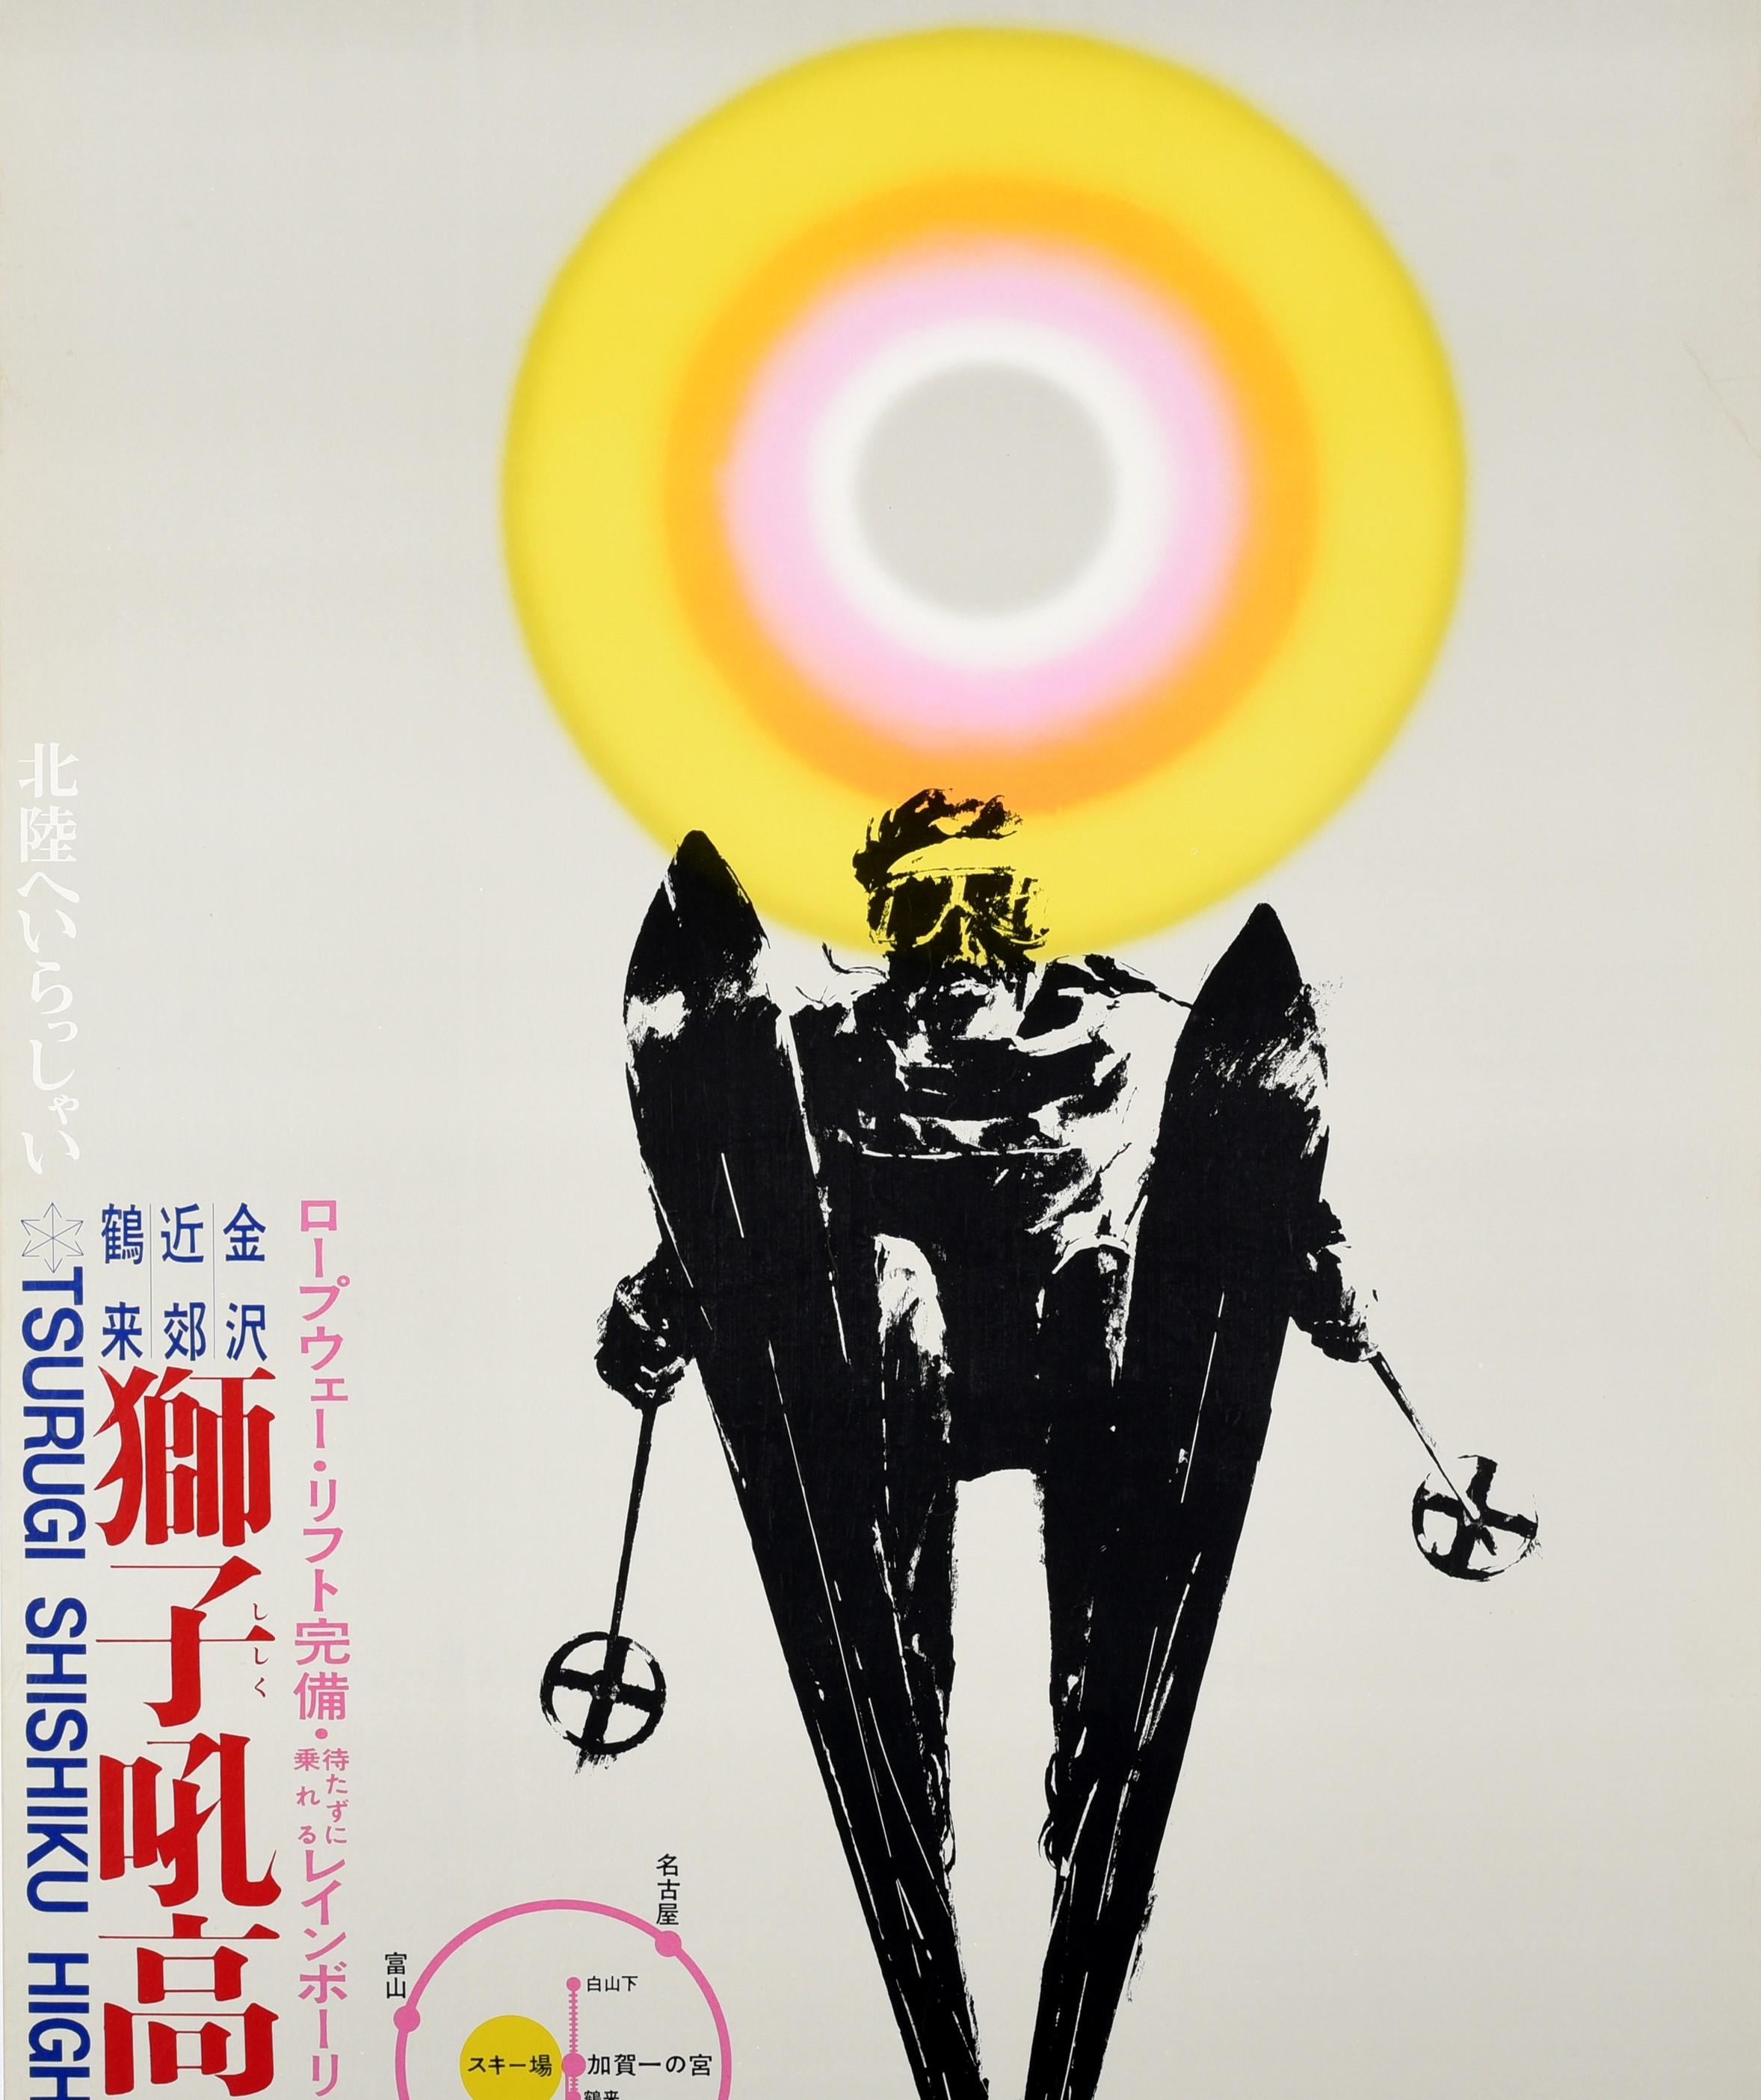 Originales Vintage-Skireiseplakat für das Tsurugi Shishiku Highland mit einem dynamischen Bild eines Skifahrers in Schwarz vor einer bunten grauen, weißen, rosa, orangefarbenen und gelben Sonne im Hintergrund, dem fetten Titeltext auf der Seite und